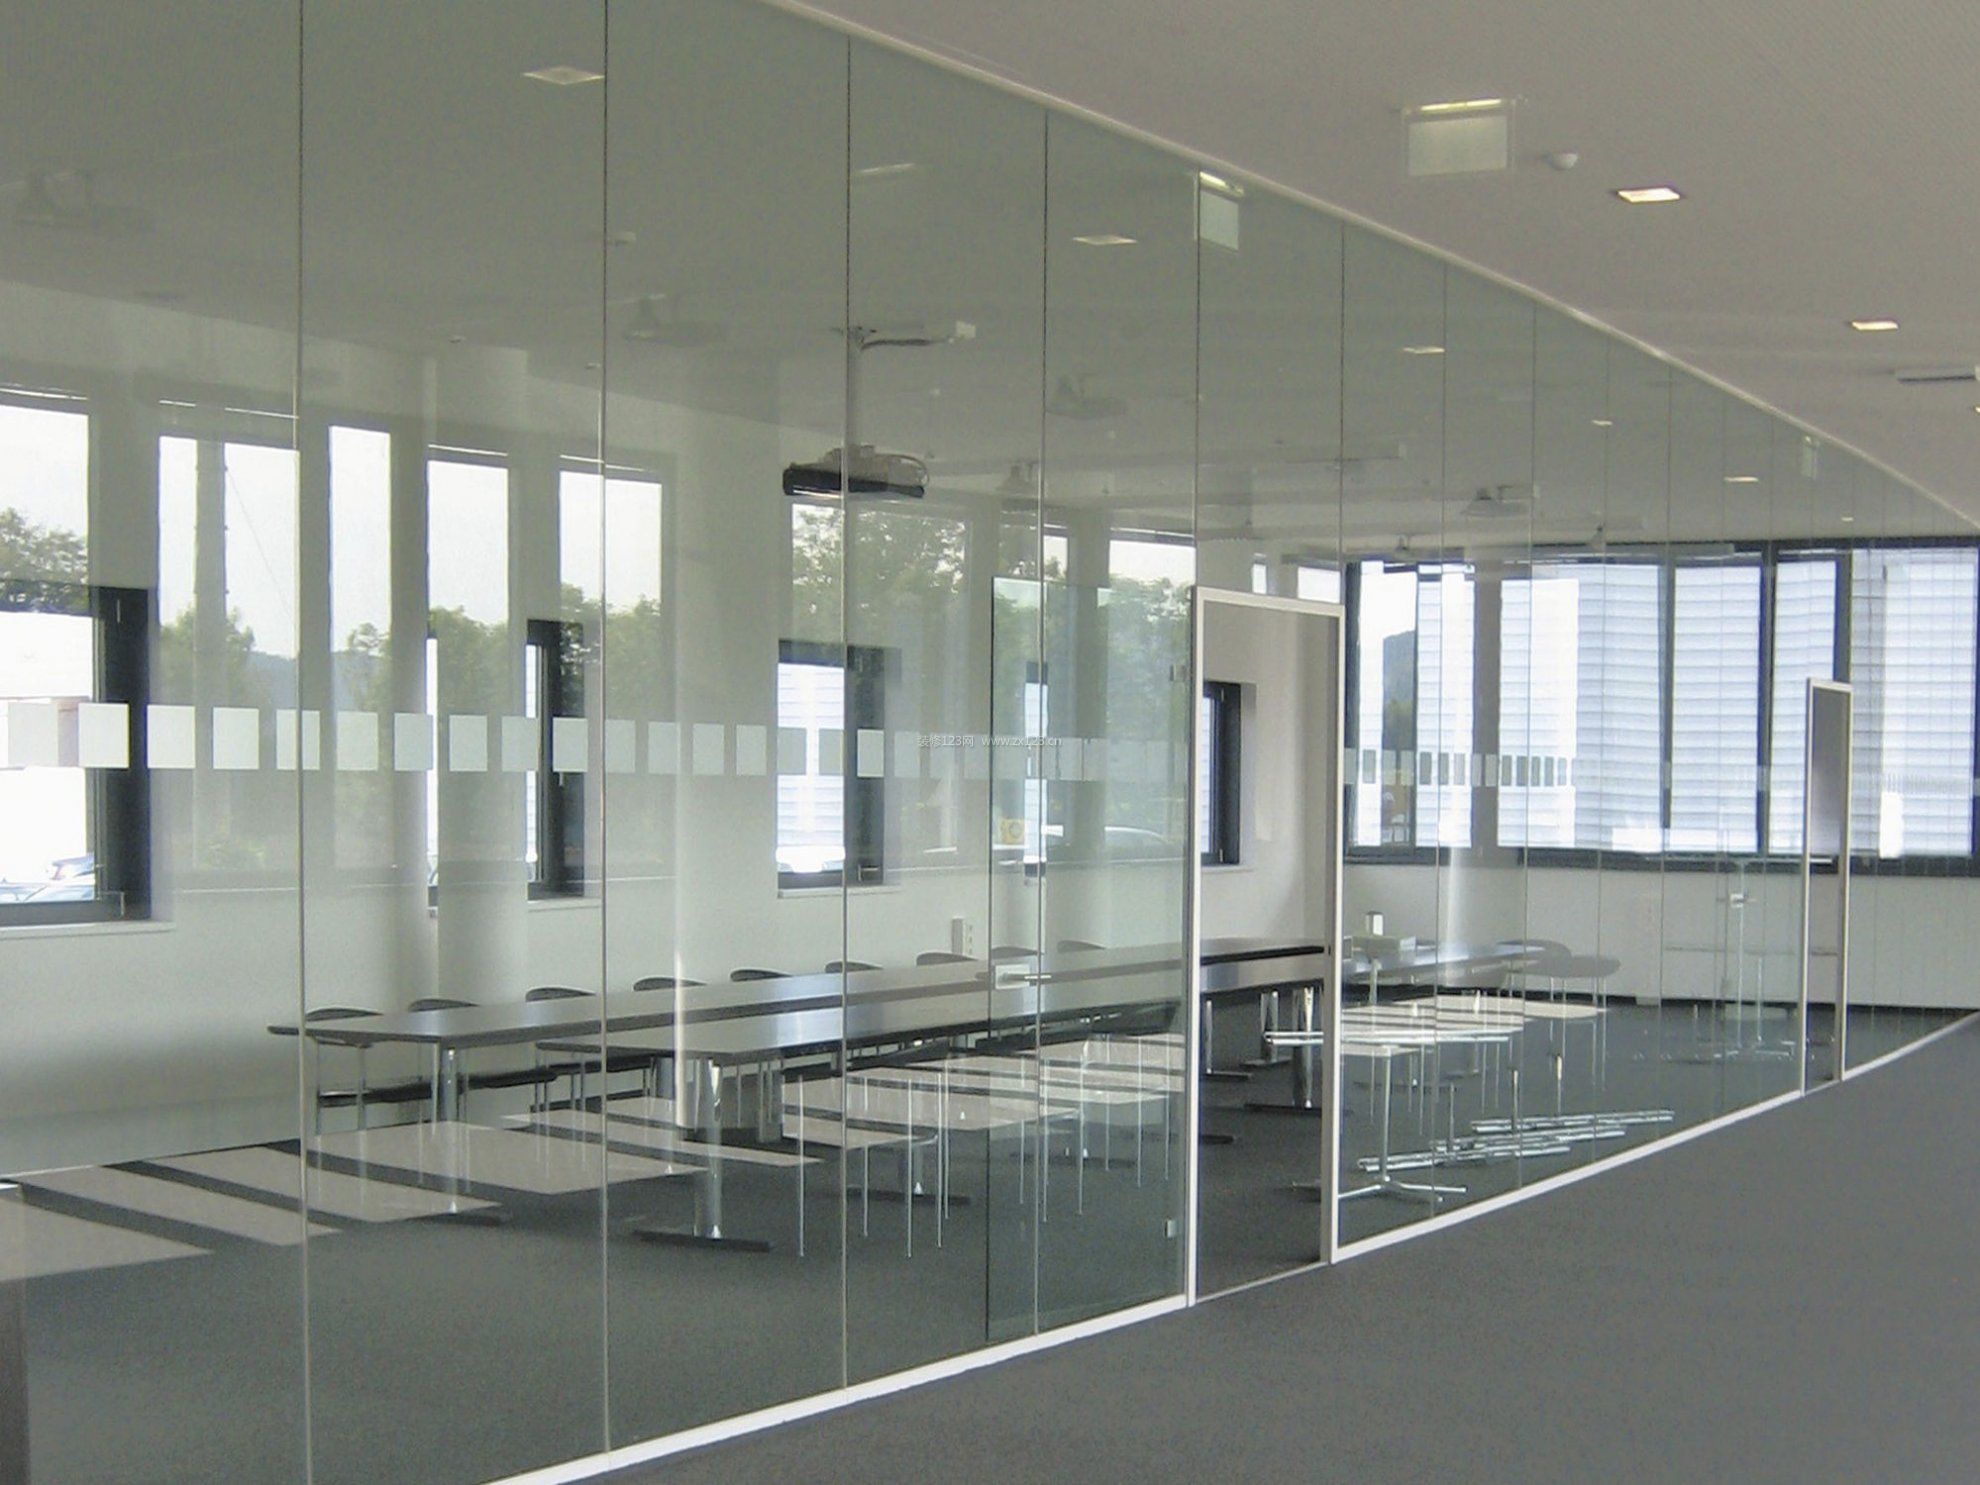 现代简约风格玻璃办公室装修效果图大全